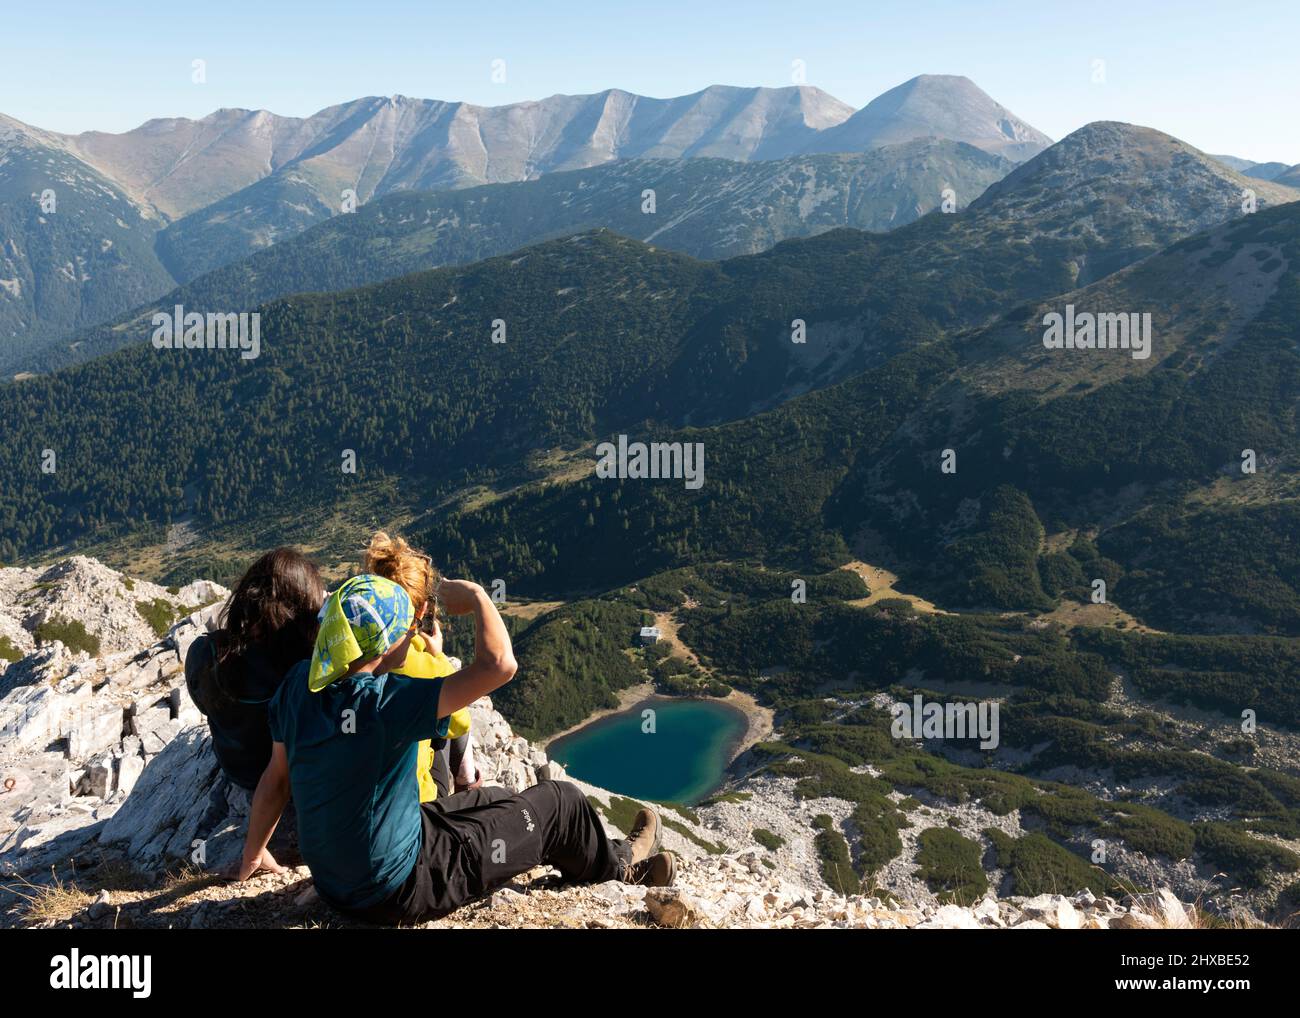 Randonneurs sur le pic de Sinanitsa à 2516m surplombant le lac glaciaire de Sinanitsa et la crête de la montagne Vihren dans la montagne de Pirin, Bulgarie, Europe de l'est, Balkans Banque D'Images